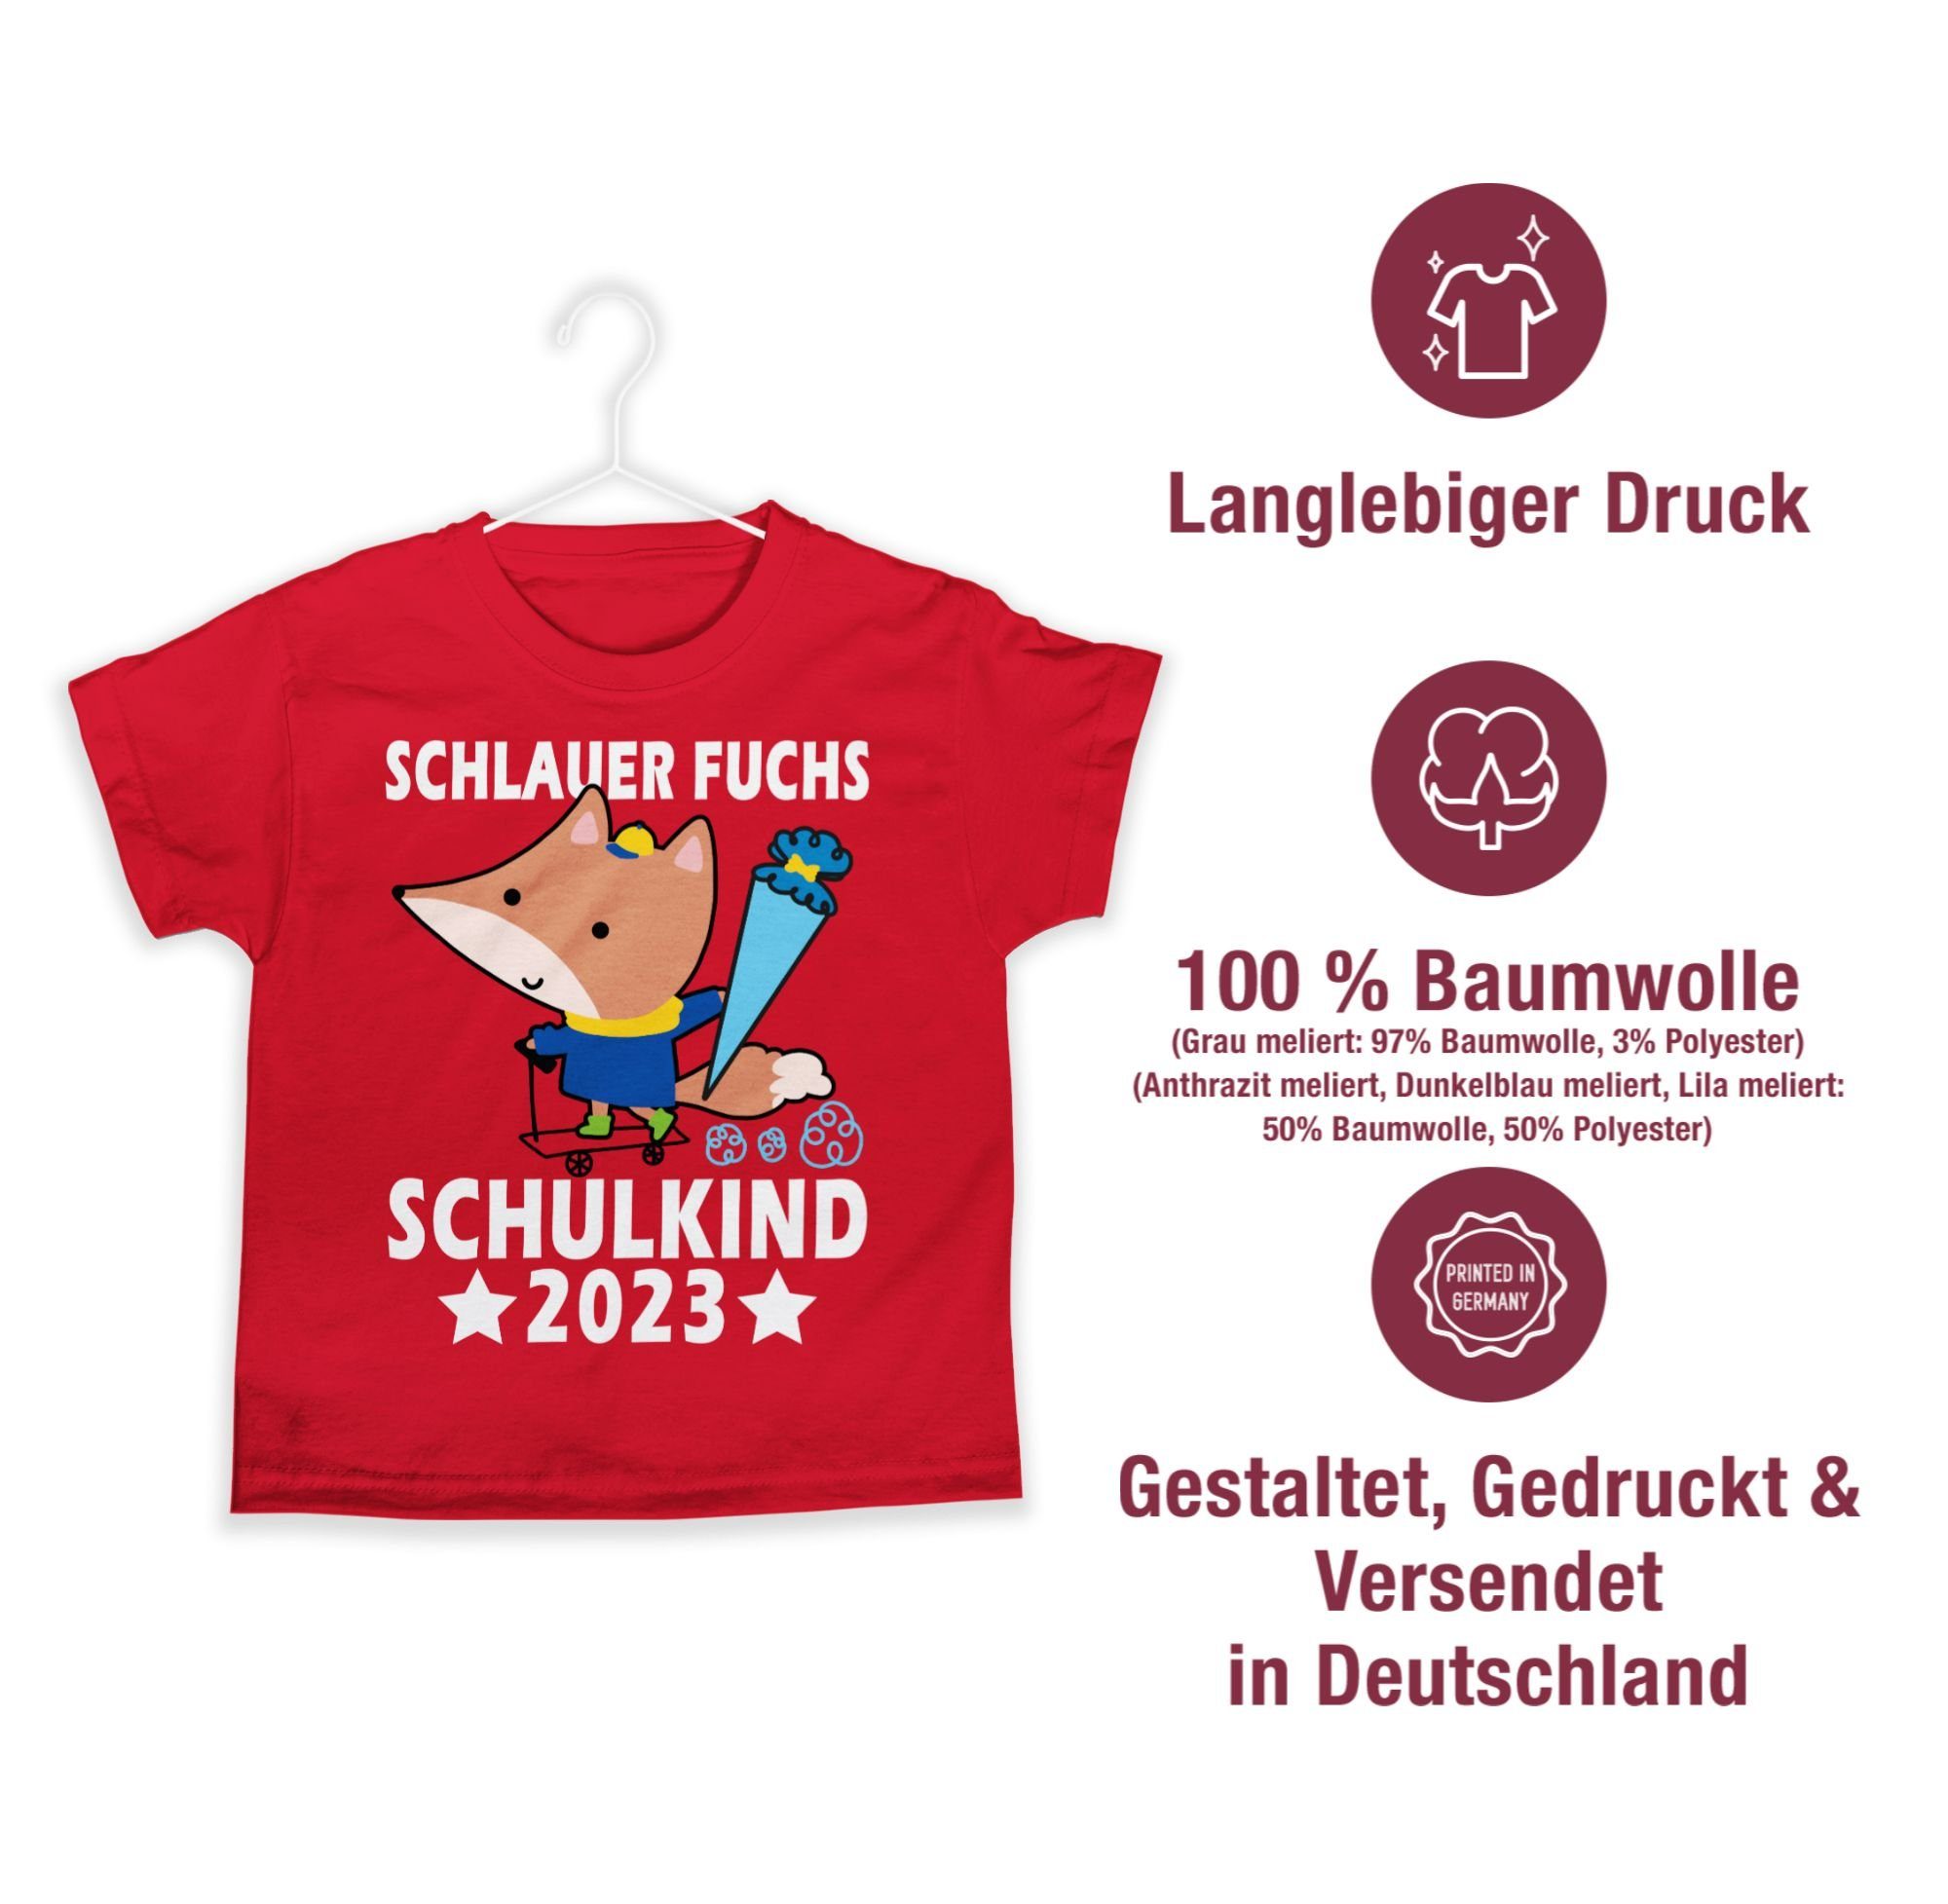 03 Fuchs Geschenke Shirtracer Rot 2023 Junge T-Shirt Schlauer Schulanfang Schulkind Einschulung